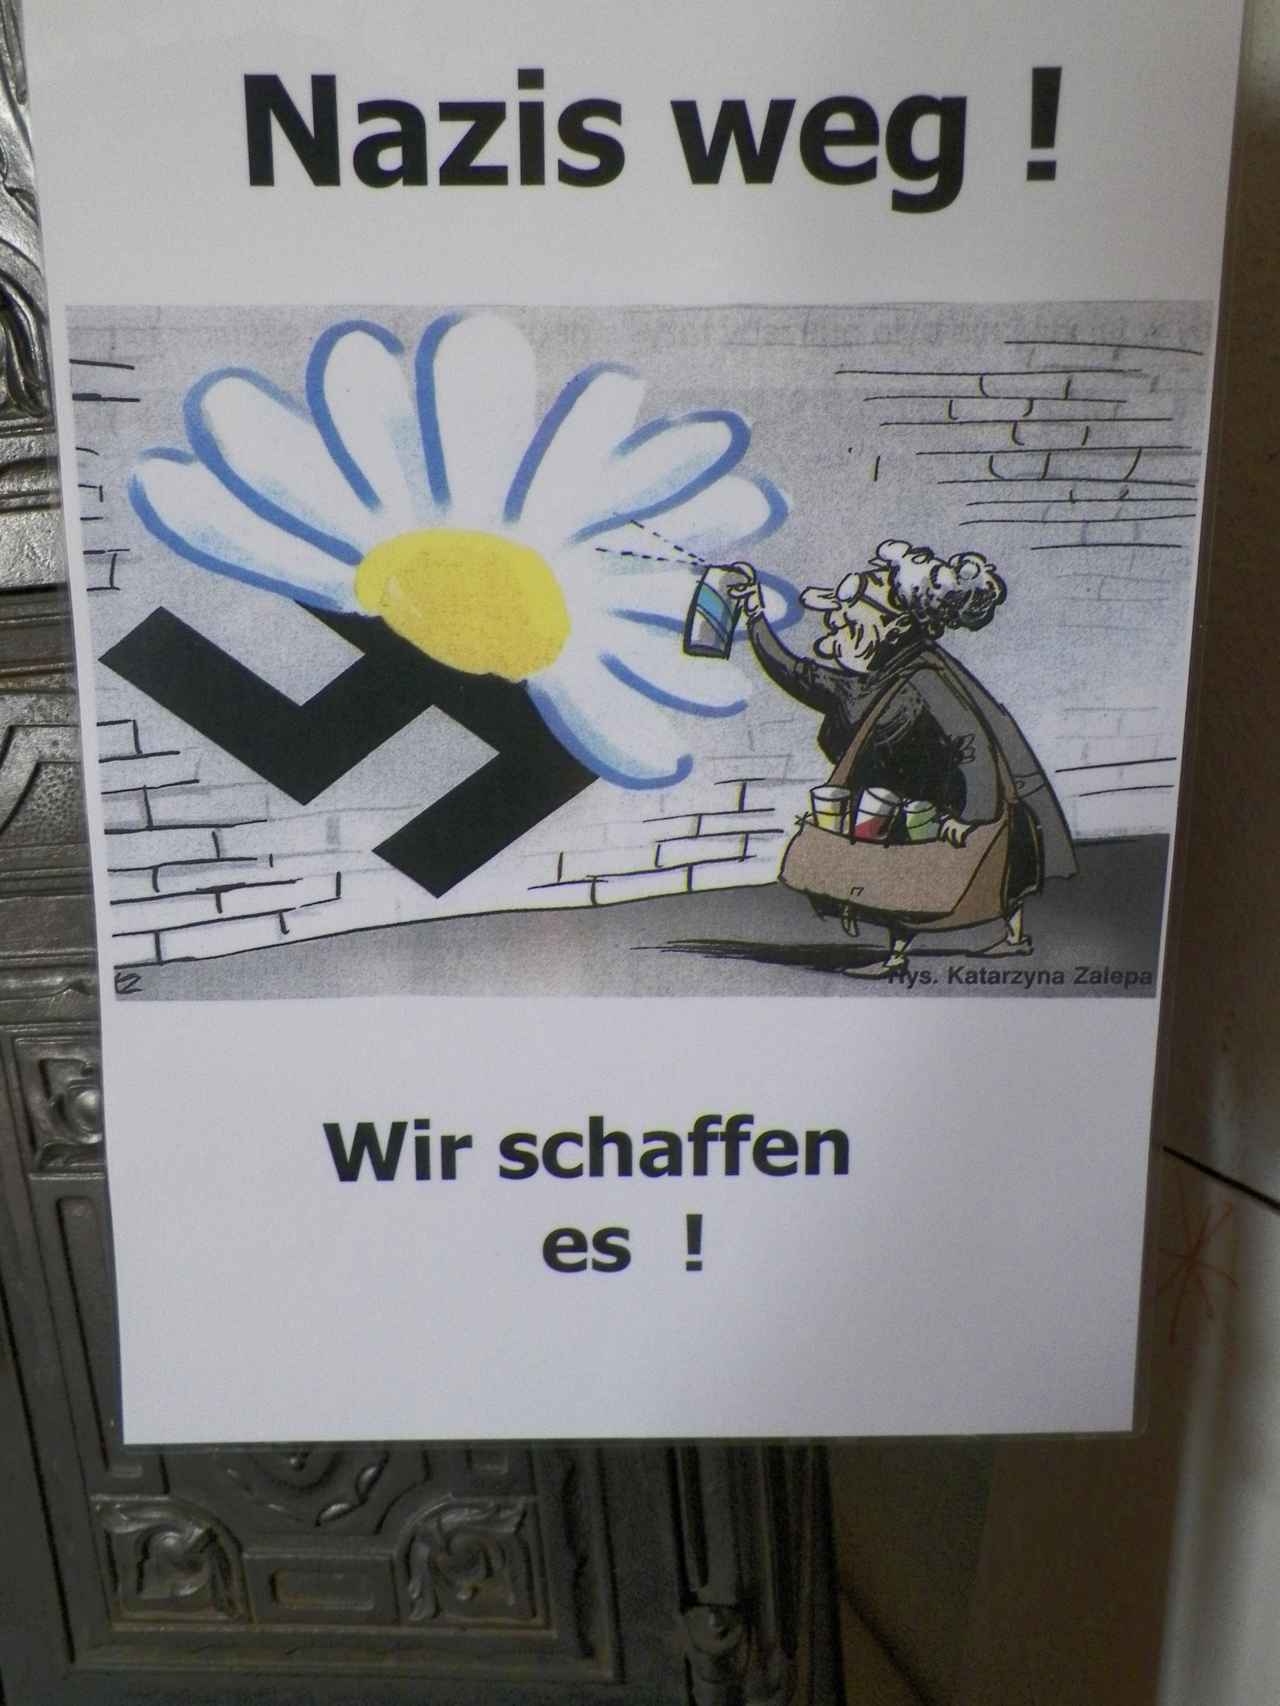 - ¡Nazis fuera! ¡Lo conseguiremos!-, dice la abuela grafitera en este cartel.